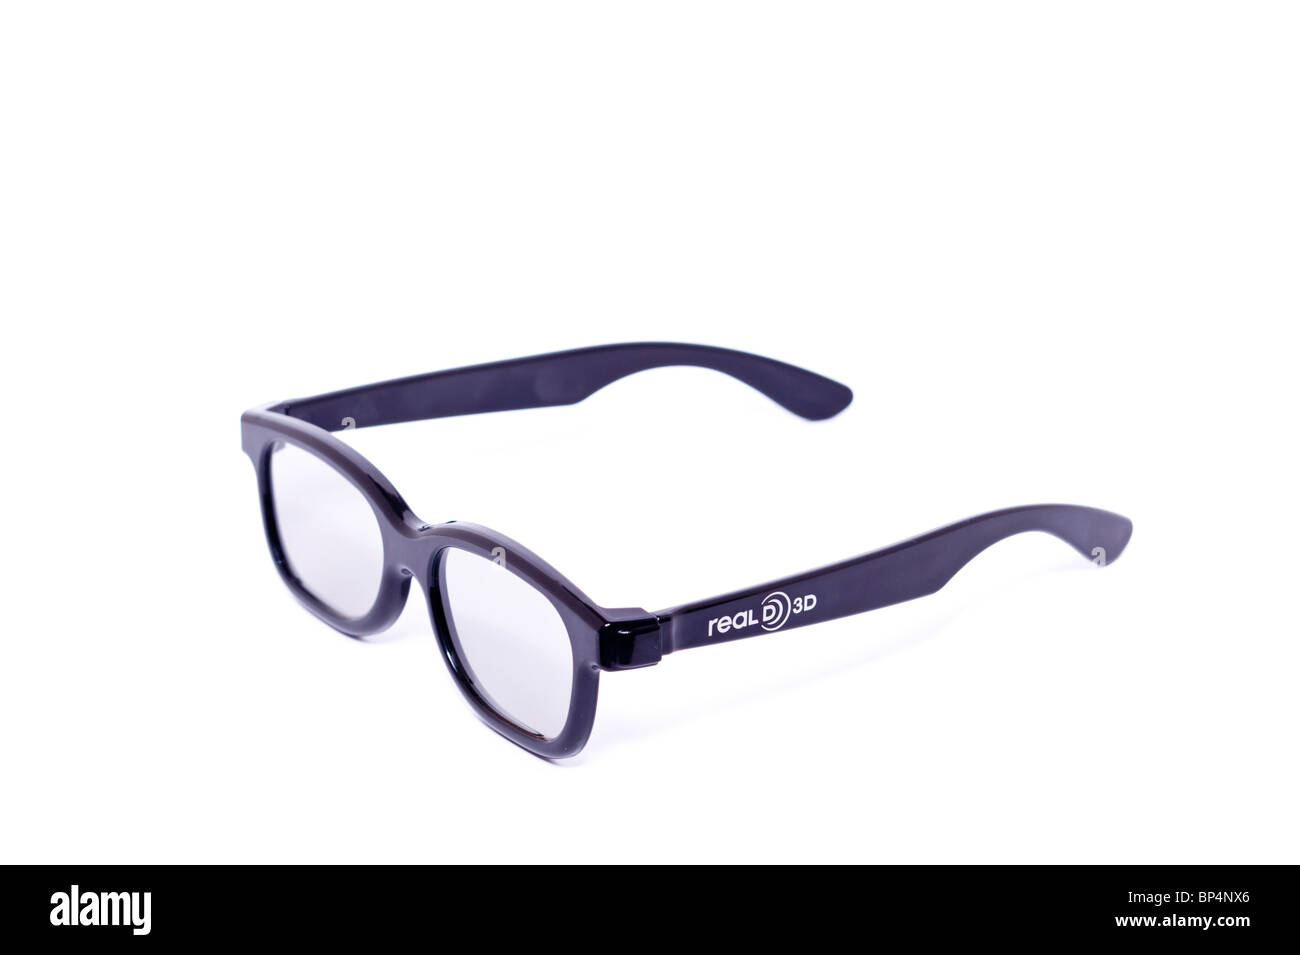 Un recorte de un par de gafas 3D D real para ver películas en 3D sobre un fondo blanco. Foto de stock